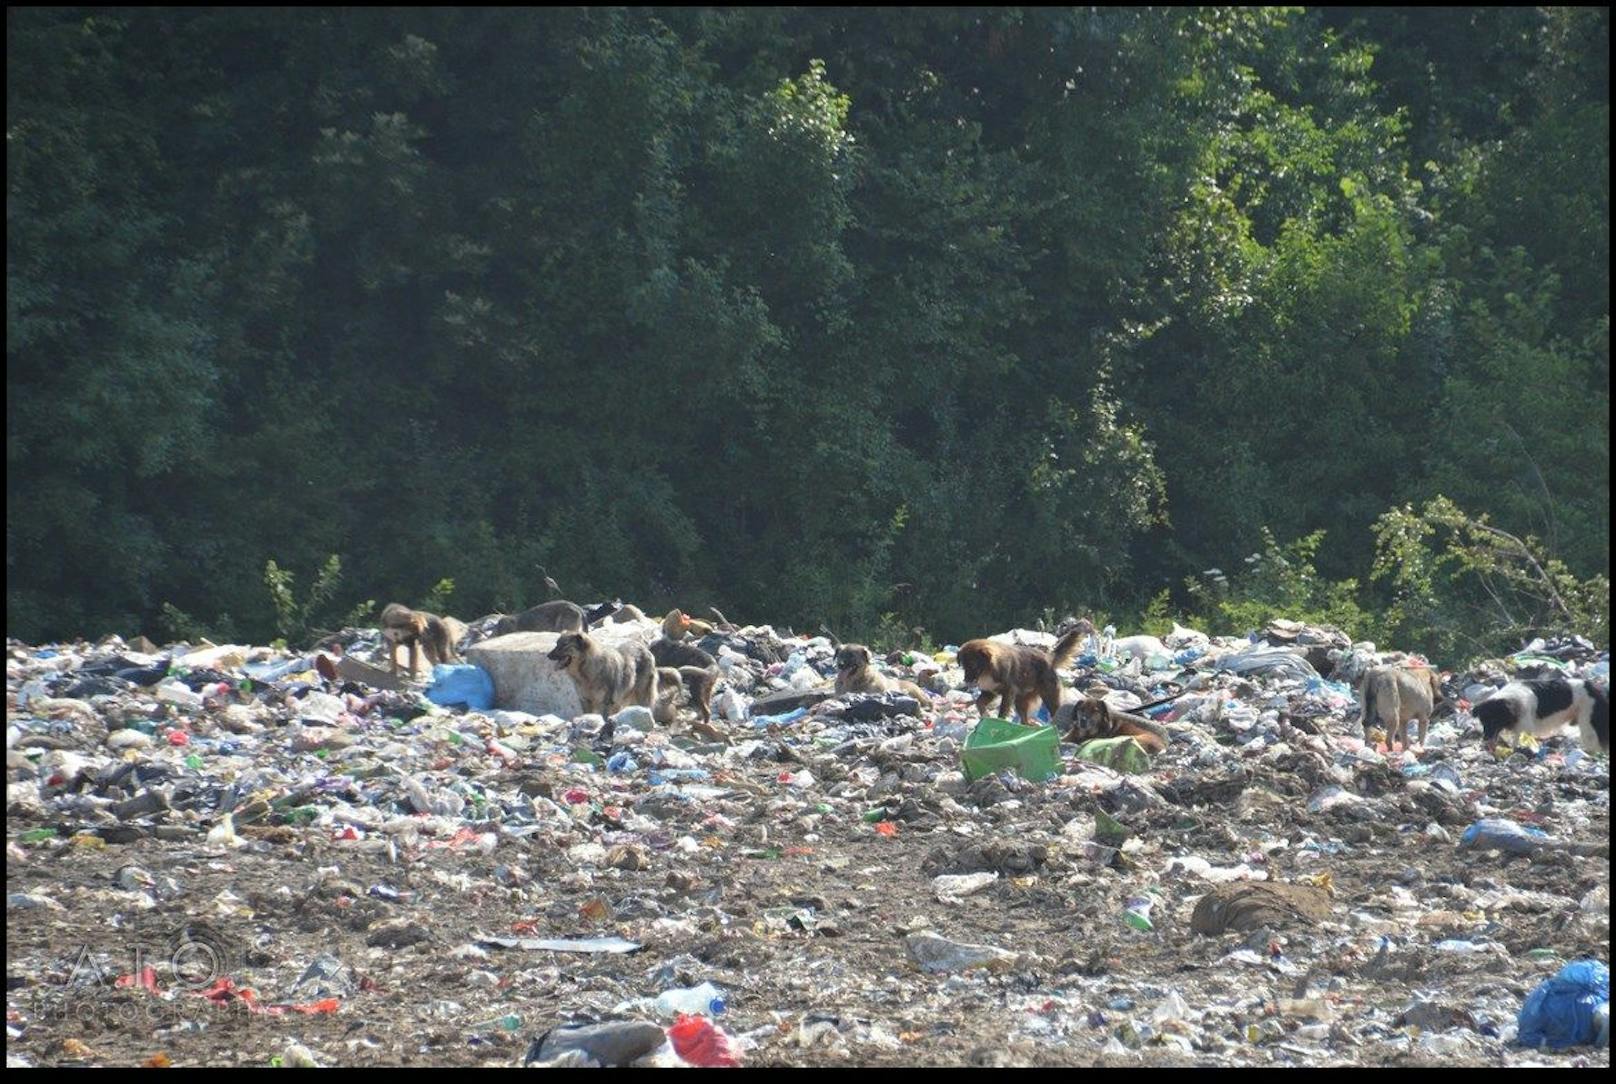 Auf der Mülldeponie von Bihac leben zahlreiche Hunde, die von Tierfängern, aber auch anderen Personen dort ausgesetzt werden - meist zum Sterben.